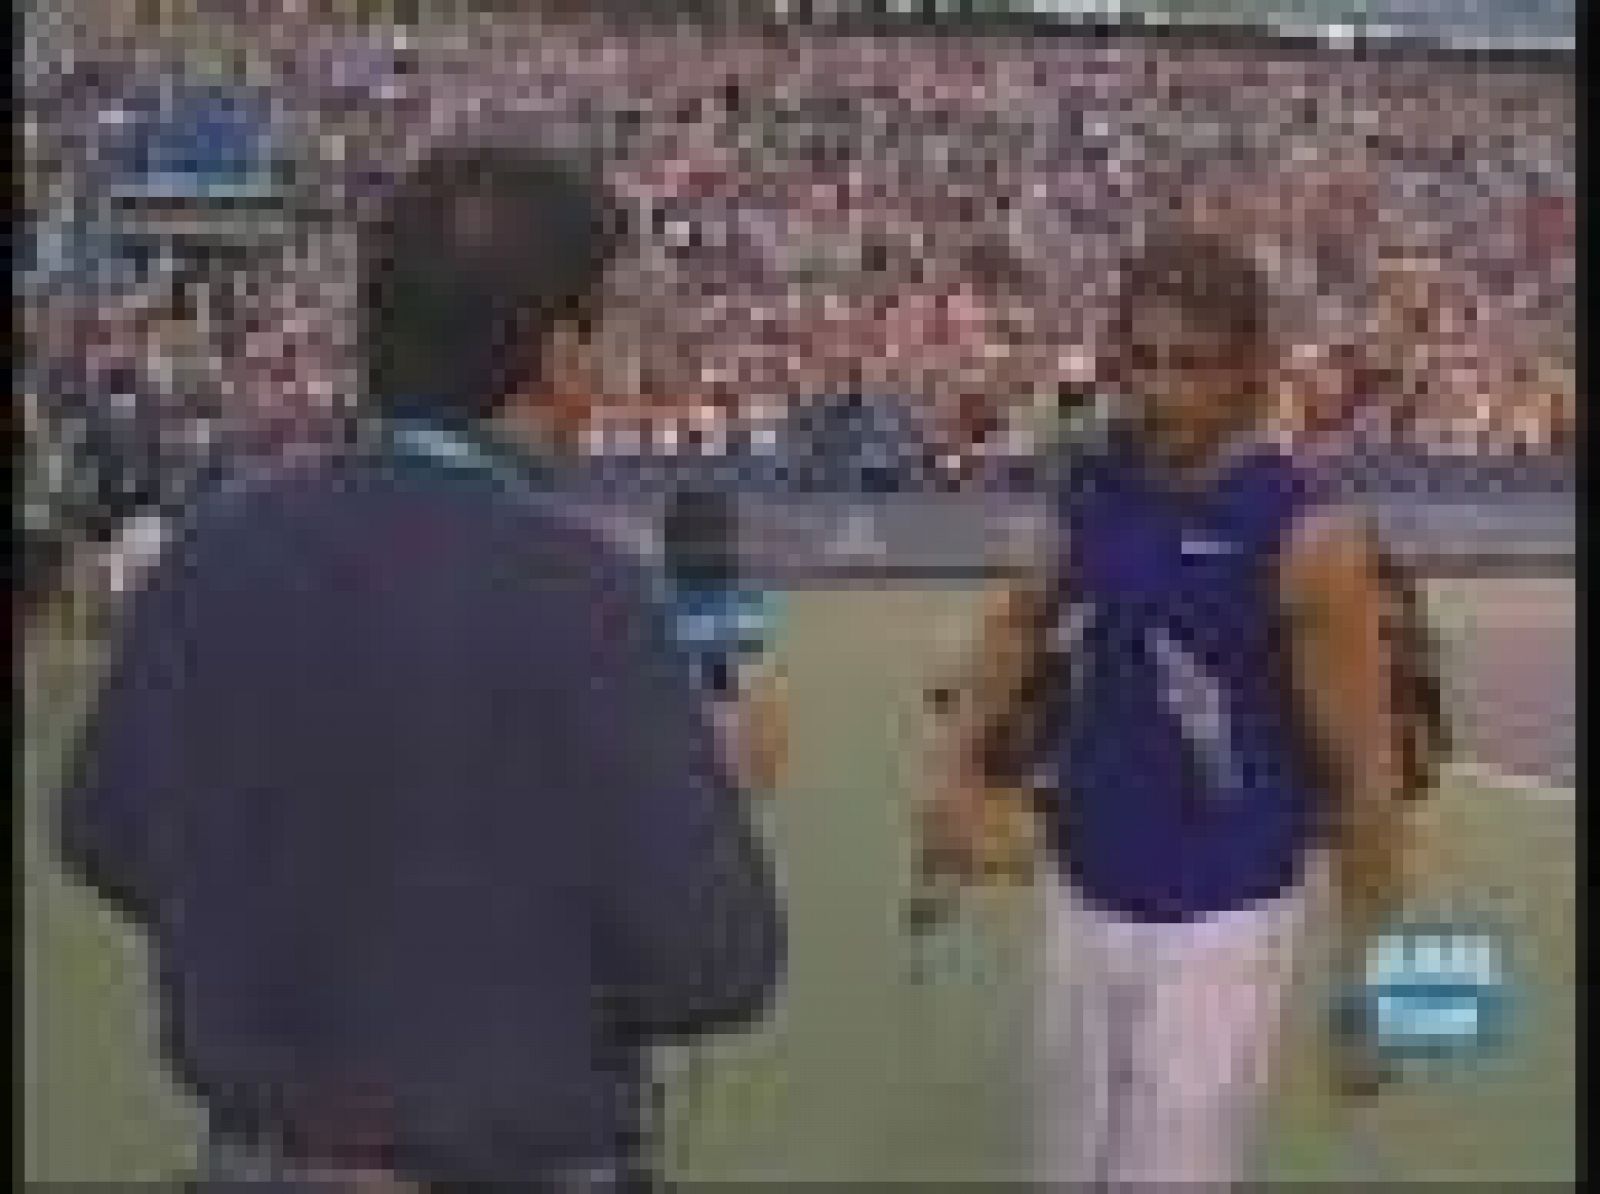 TVE entrenvista en exclusiva a Rafa Nadal tras alzarse con el nº1 del tenis mundial. El mallorquín está muy contento por "la gran ampaña" realizada en América. "Ahora toca medalla en los juegos".